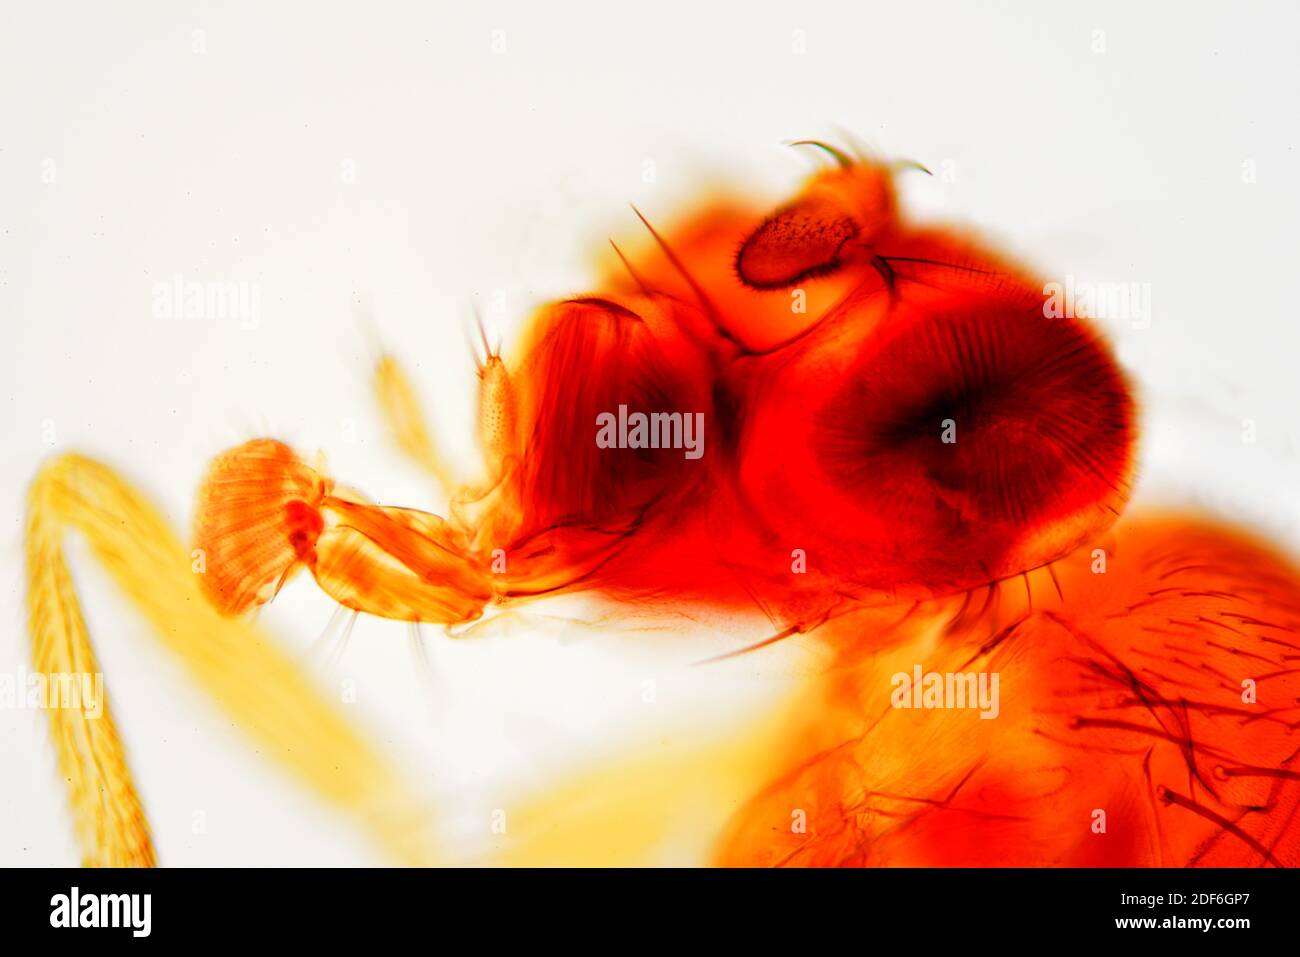 Vinegar fly or fruit fly (Drosophila melanogaster) head detail. Optical microscope X100. Stock Photo